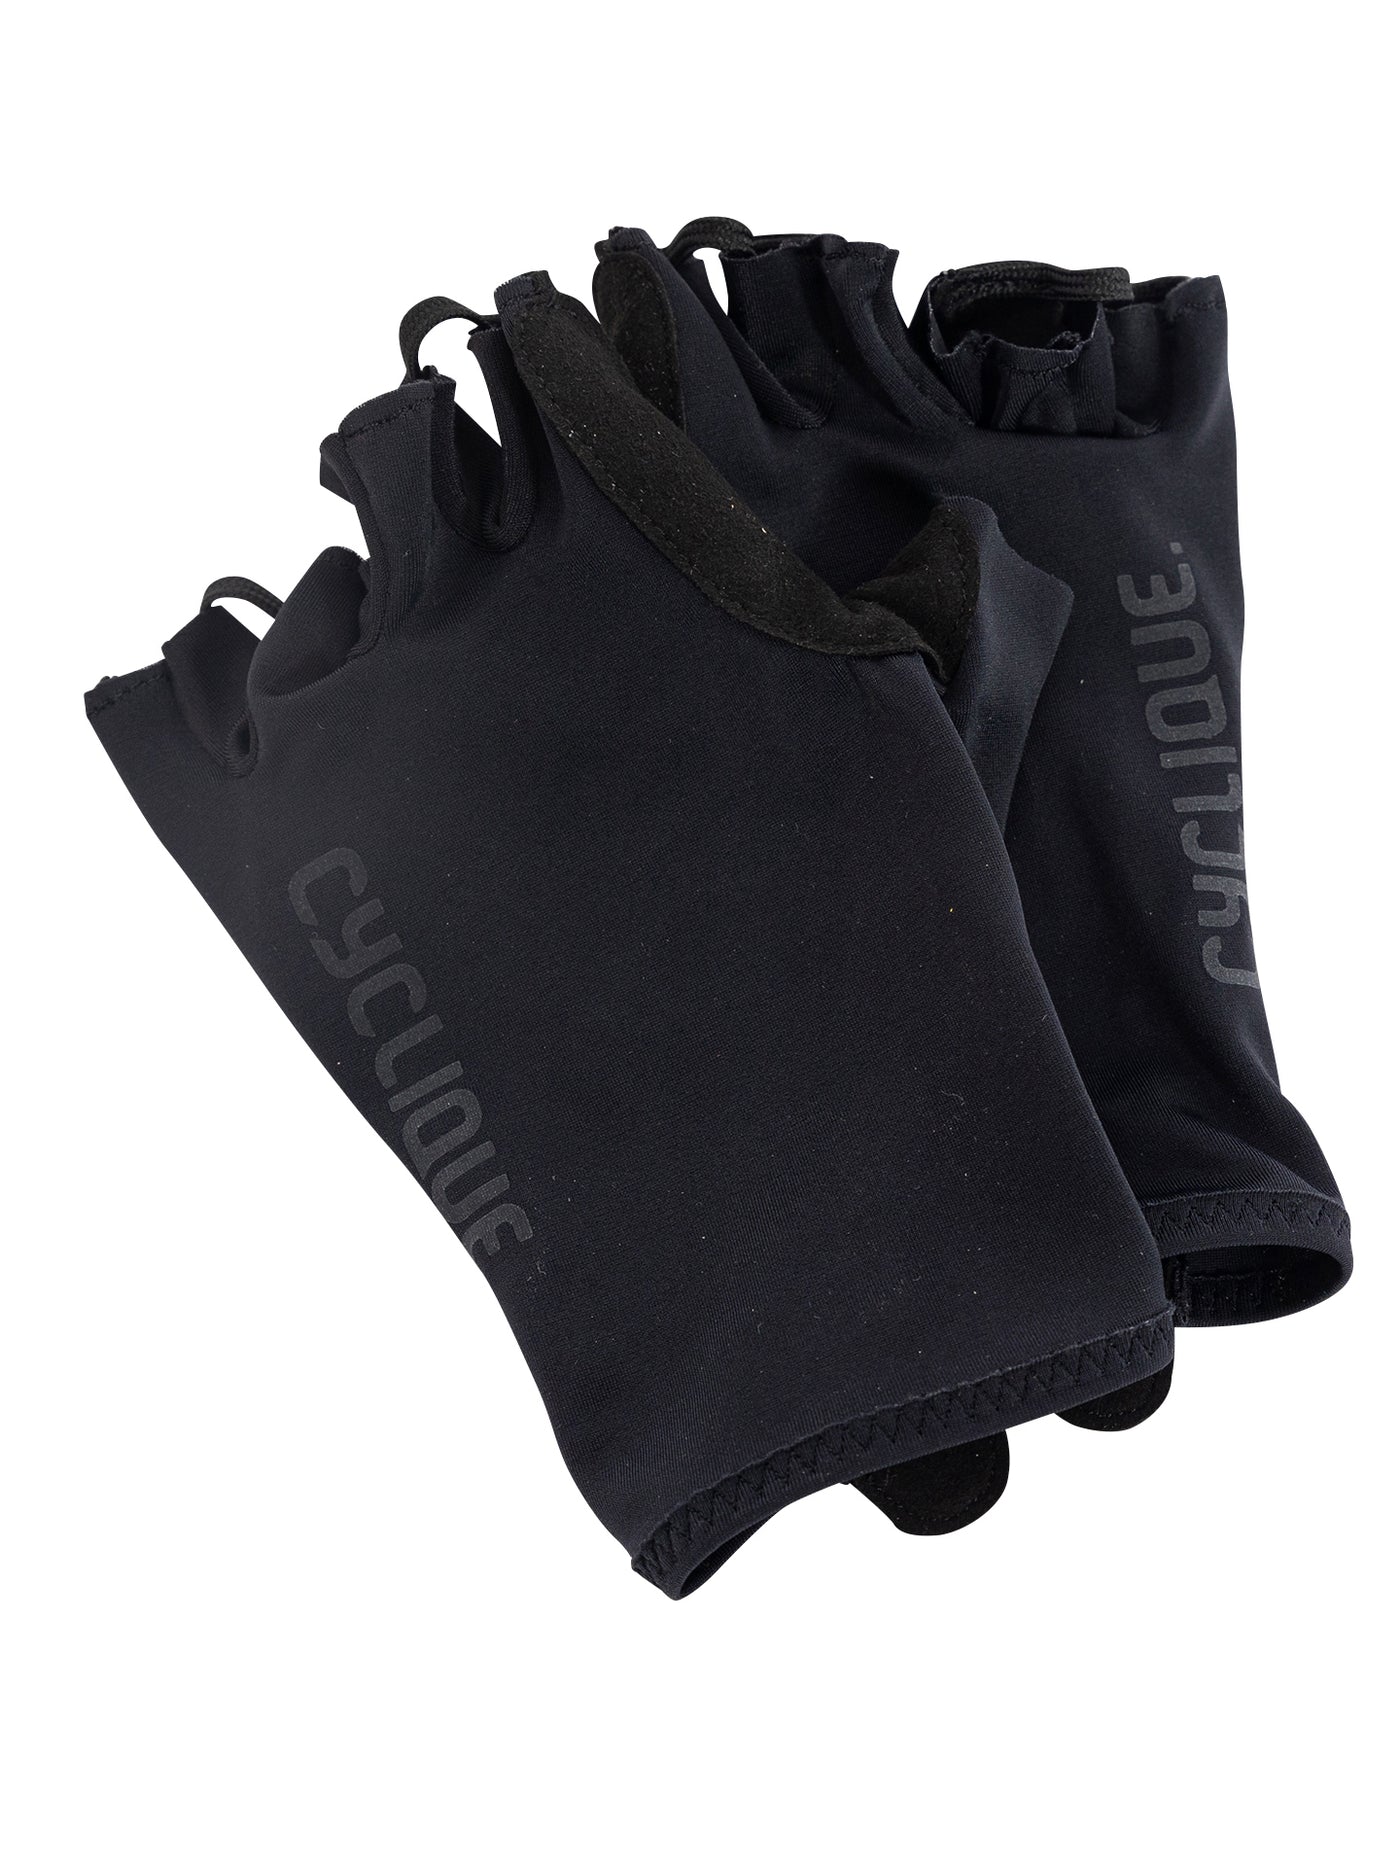 EssentiQ gloves